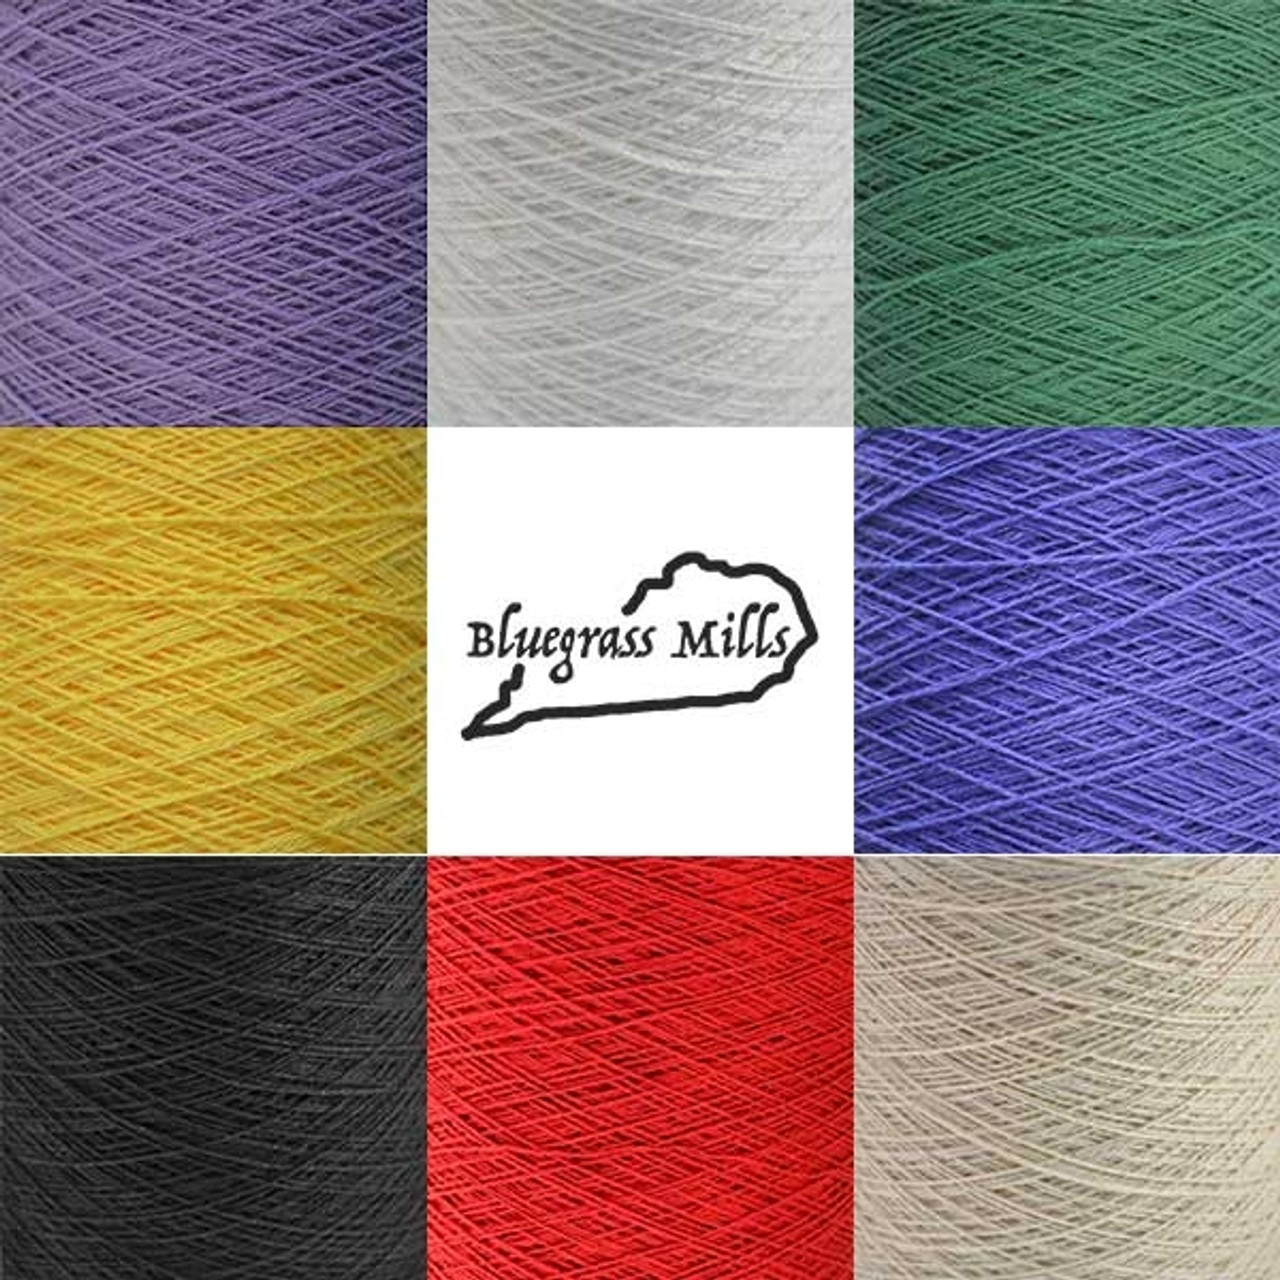 Download Bluegrass Mills Hemp Yarn Hemp Yarn For Sale The Woolery